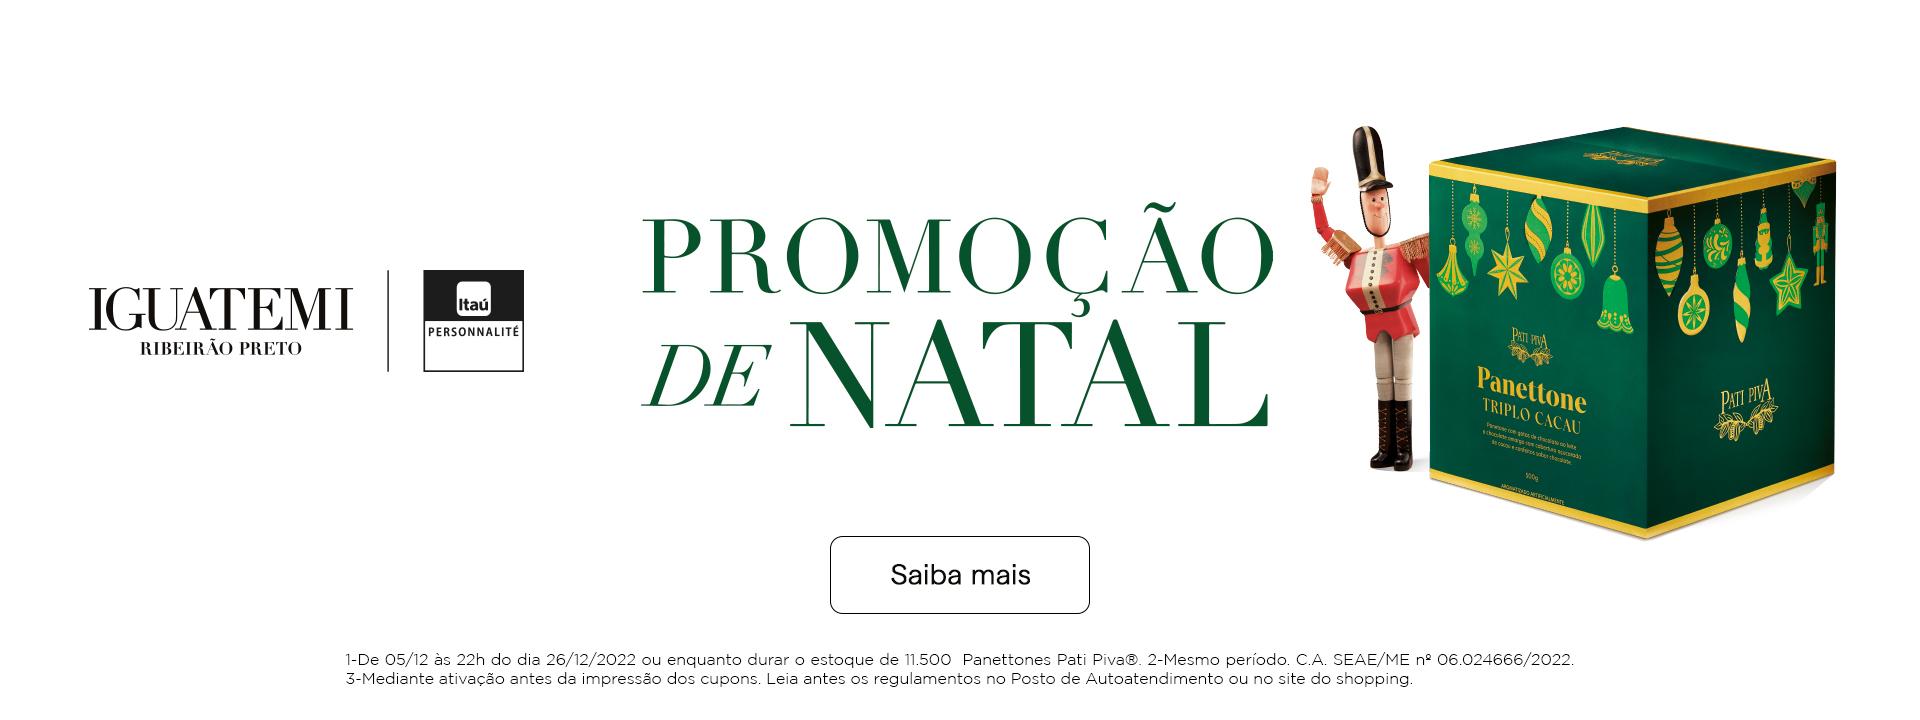 Promoção de Natal 2022 | Iguatemi Ribeirão Preto